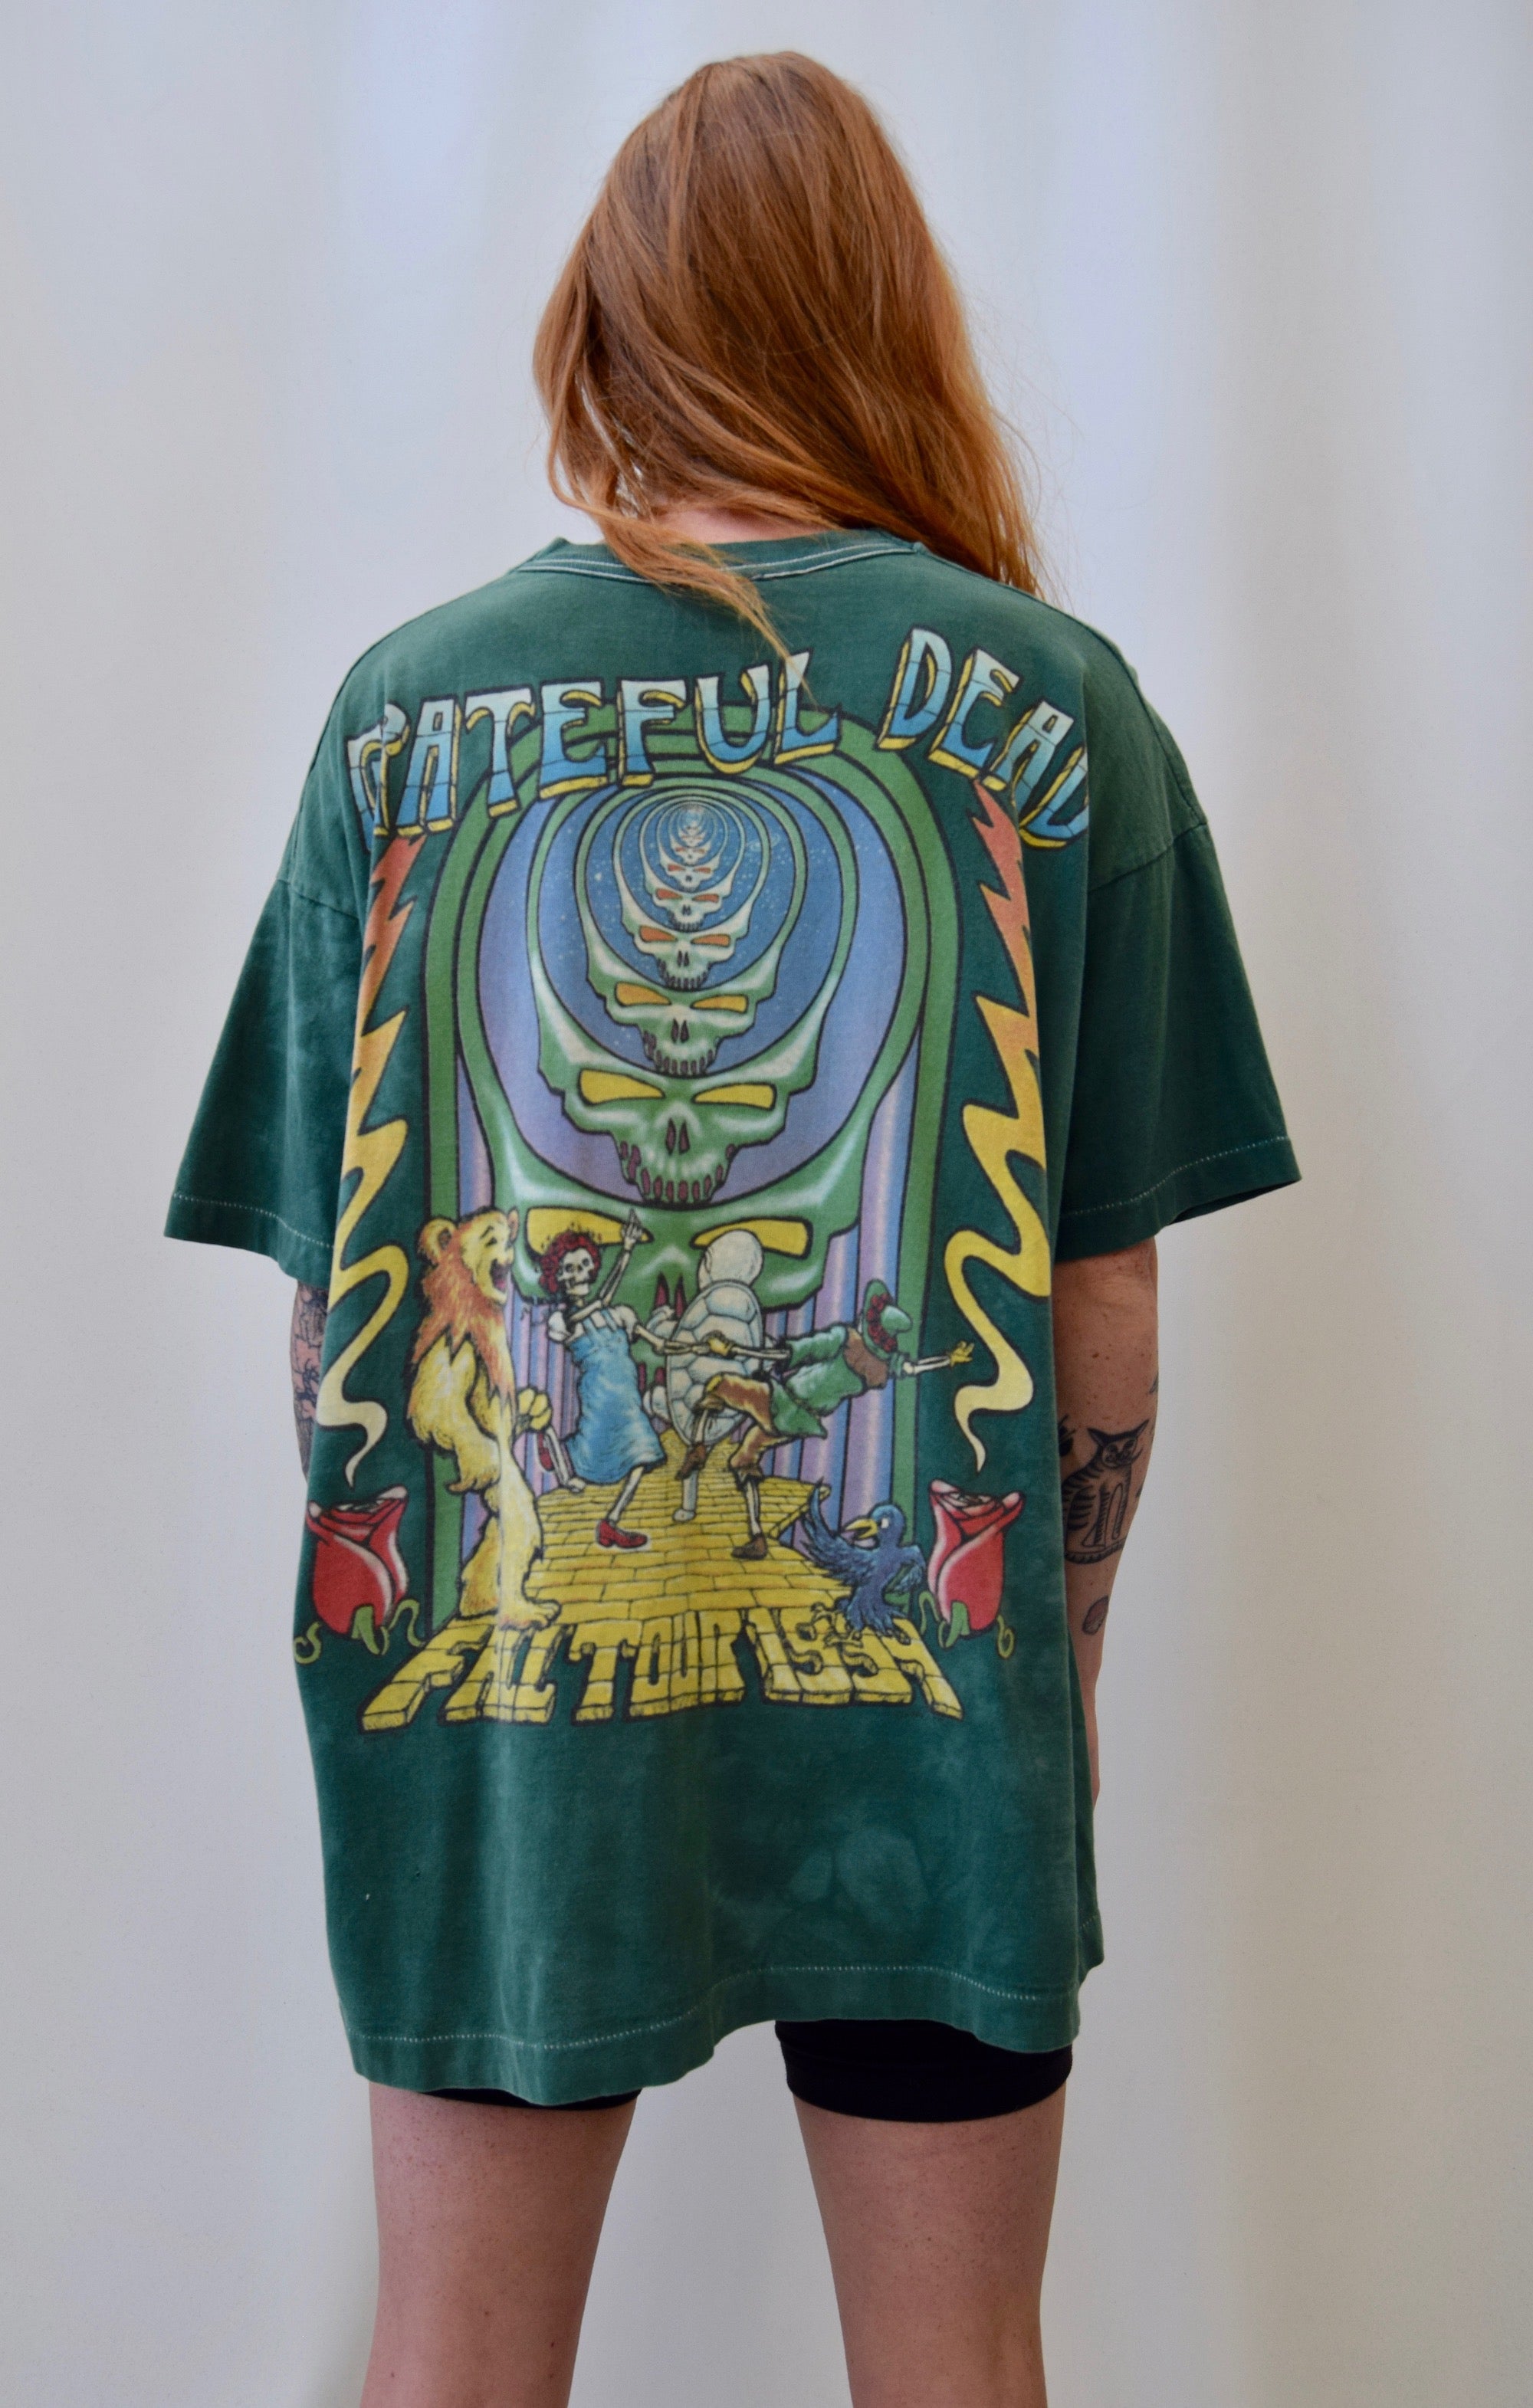 Vintage 1994 Grateful Dead "Follow the Golden Road" T-Shirt